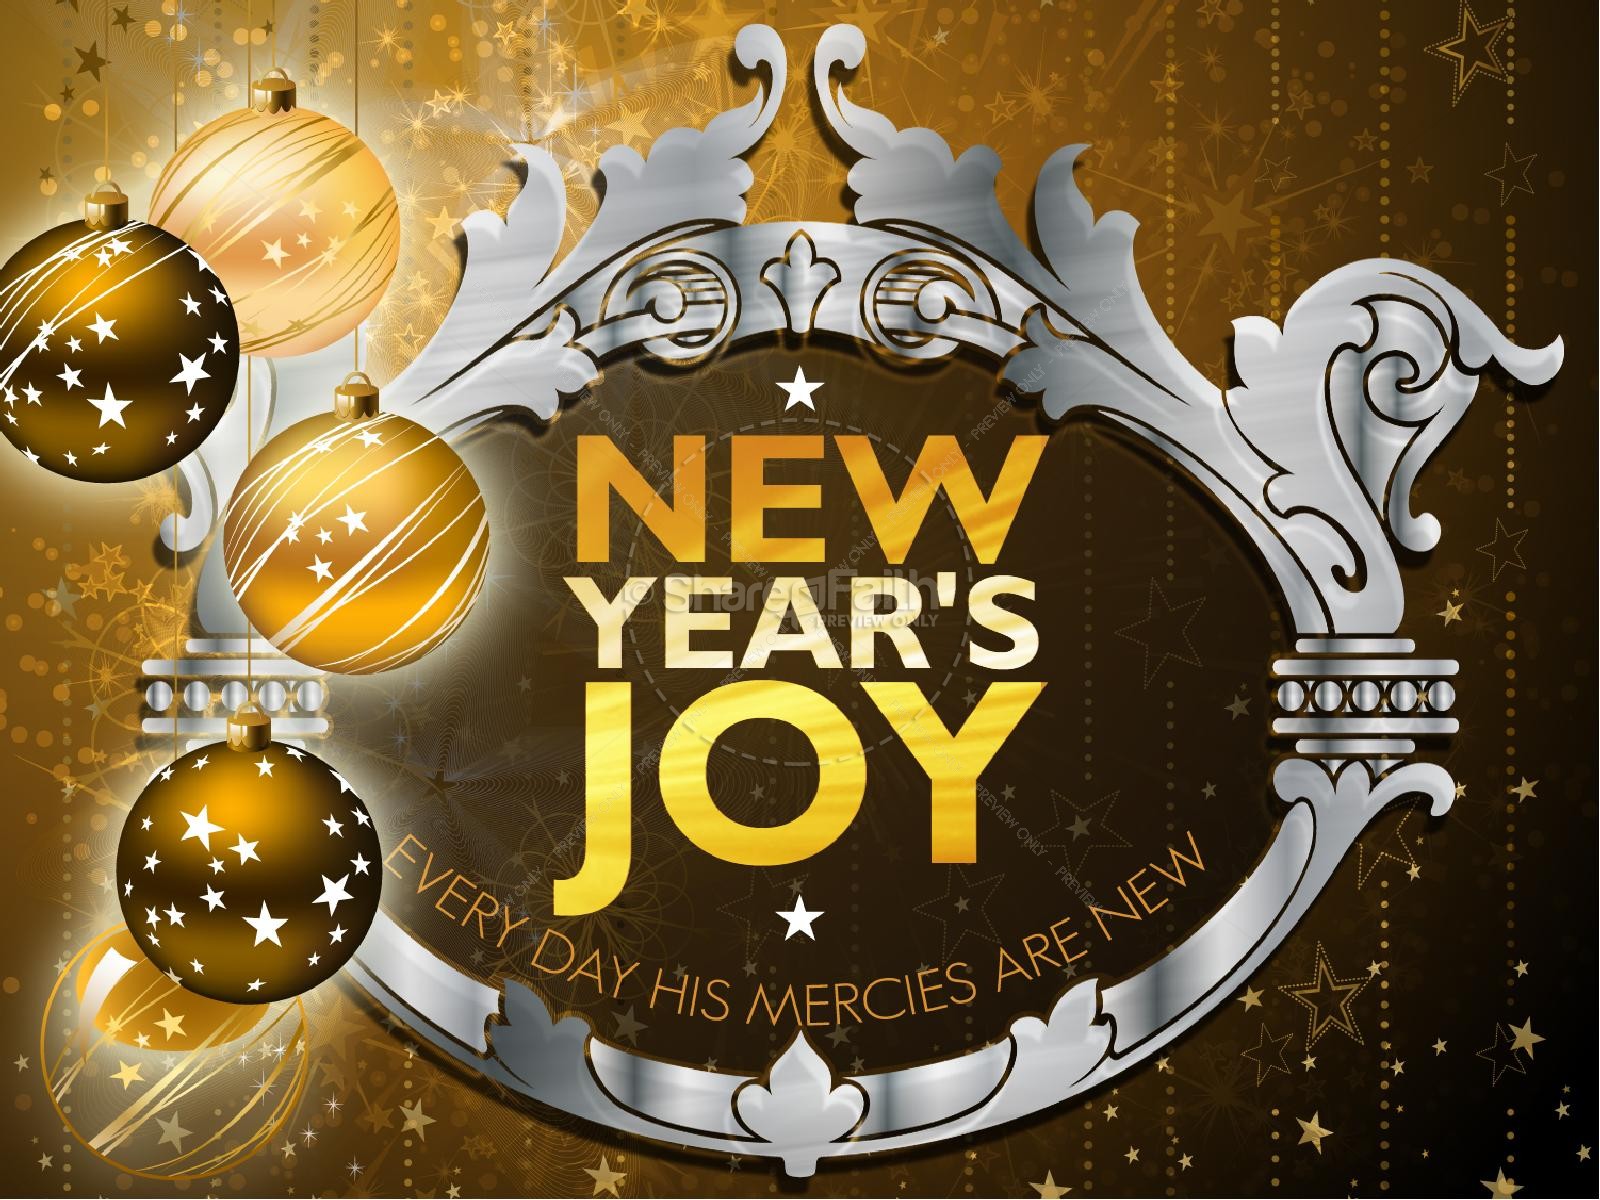 New Year's Joy PowerPoint Sermon